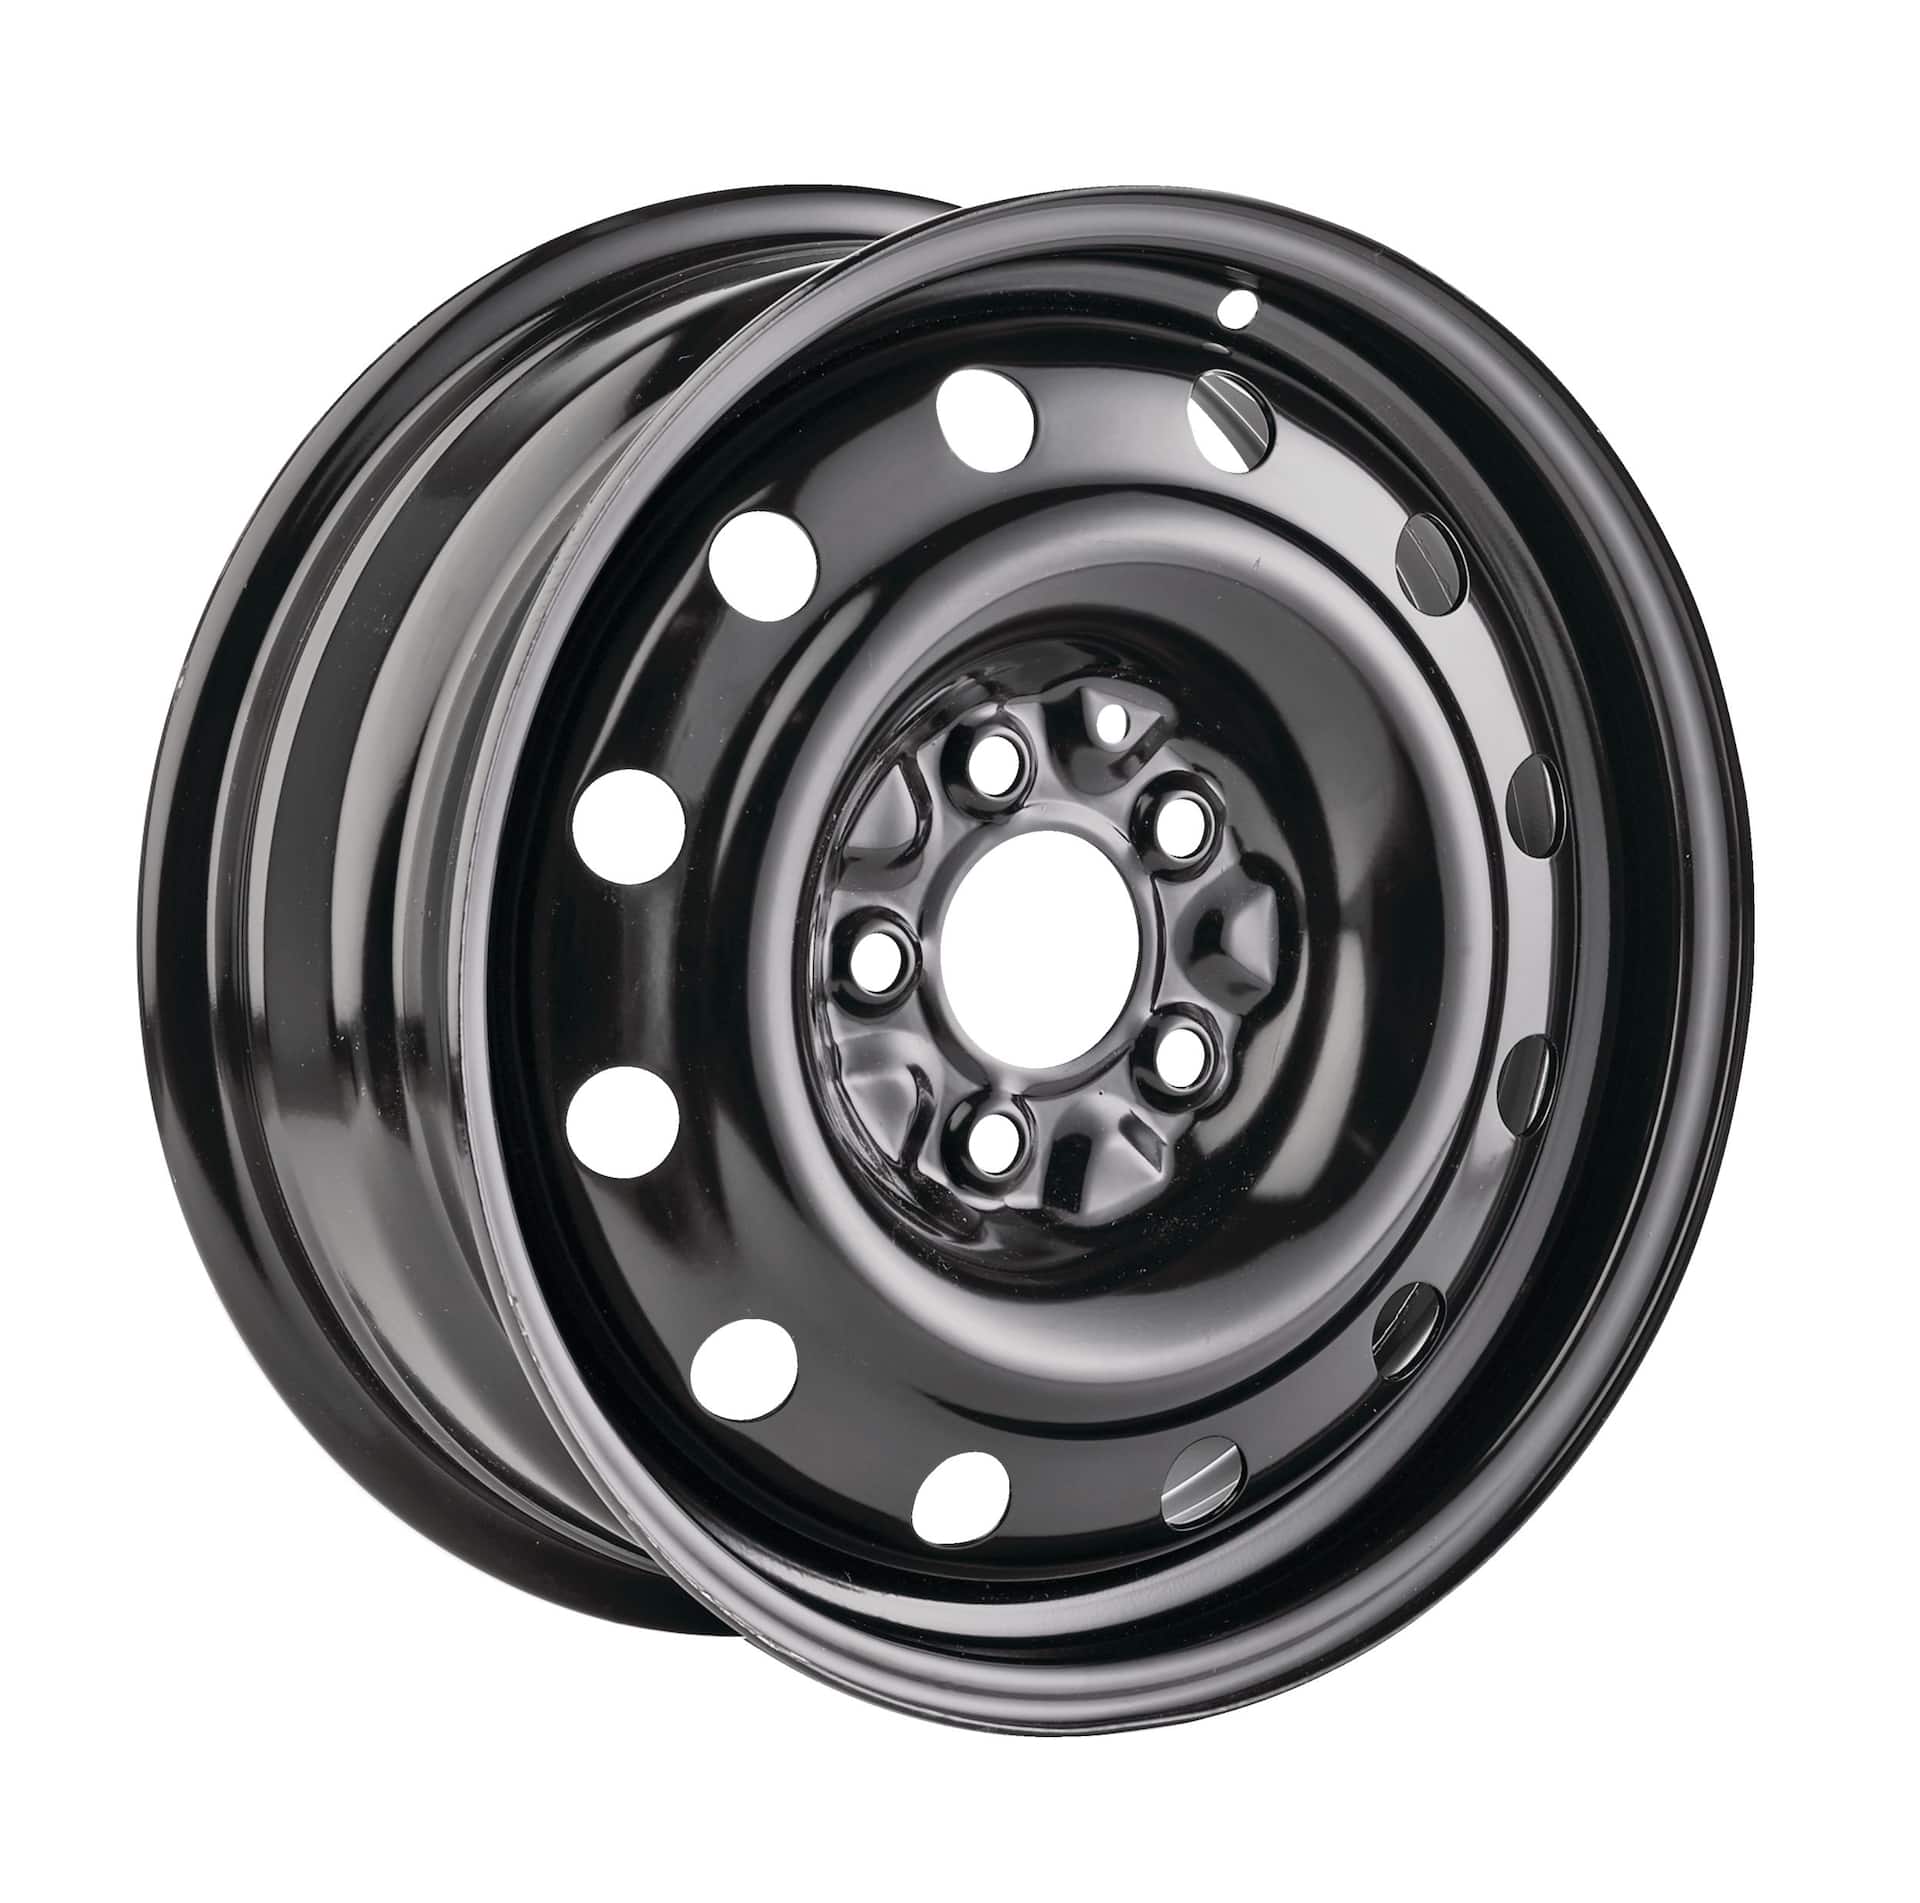 Macpek X7 Steel Wheel/Rim, Black